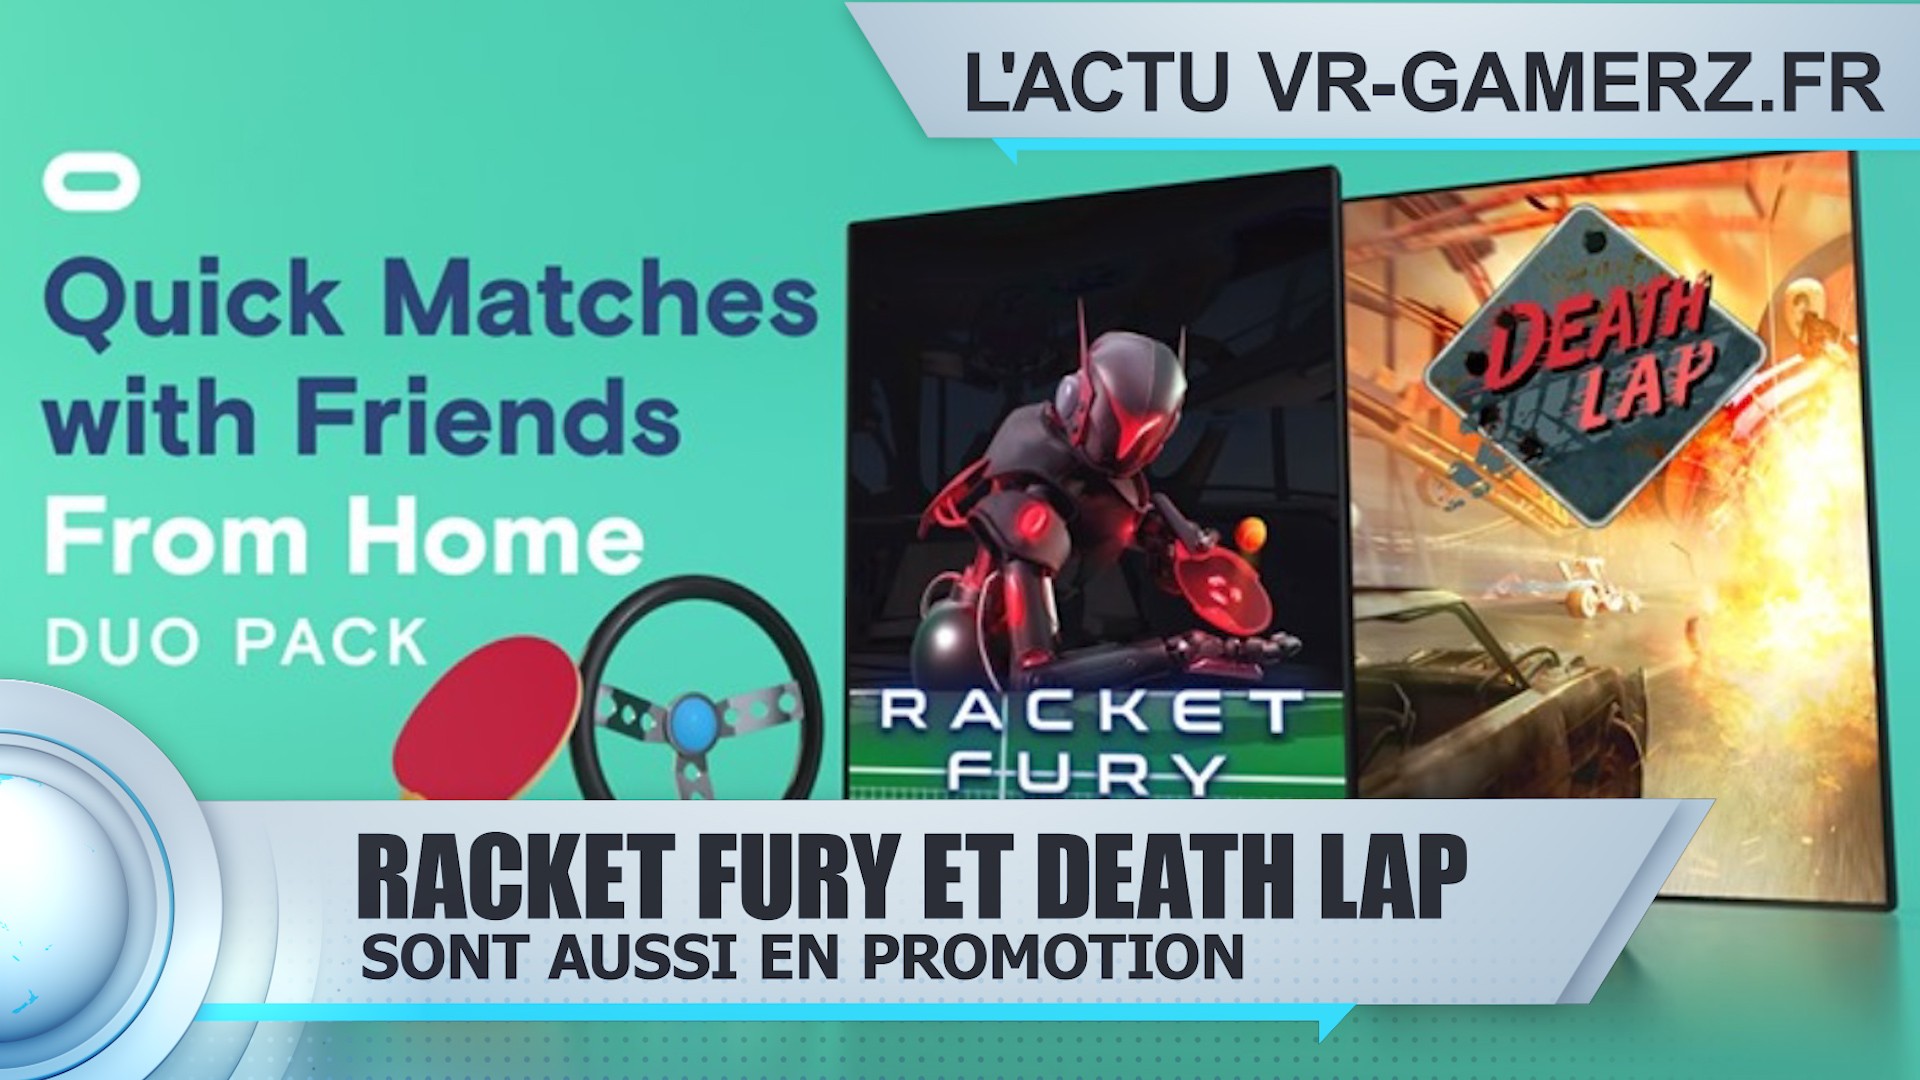 Racket Fury Table Tennis VR et Death Lap sont aussi en promotion sur Oculus quest